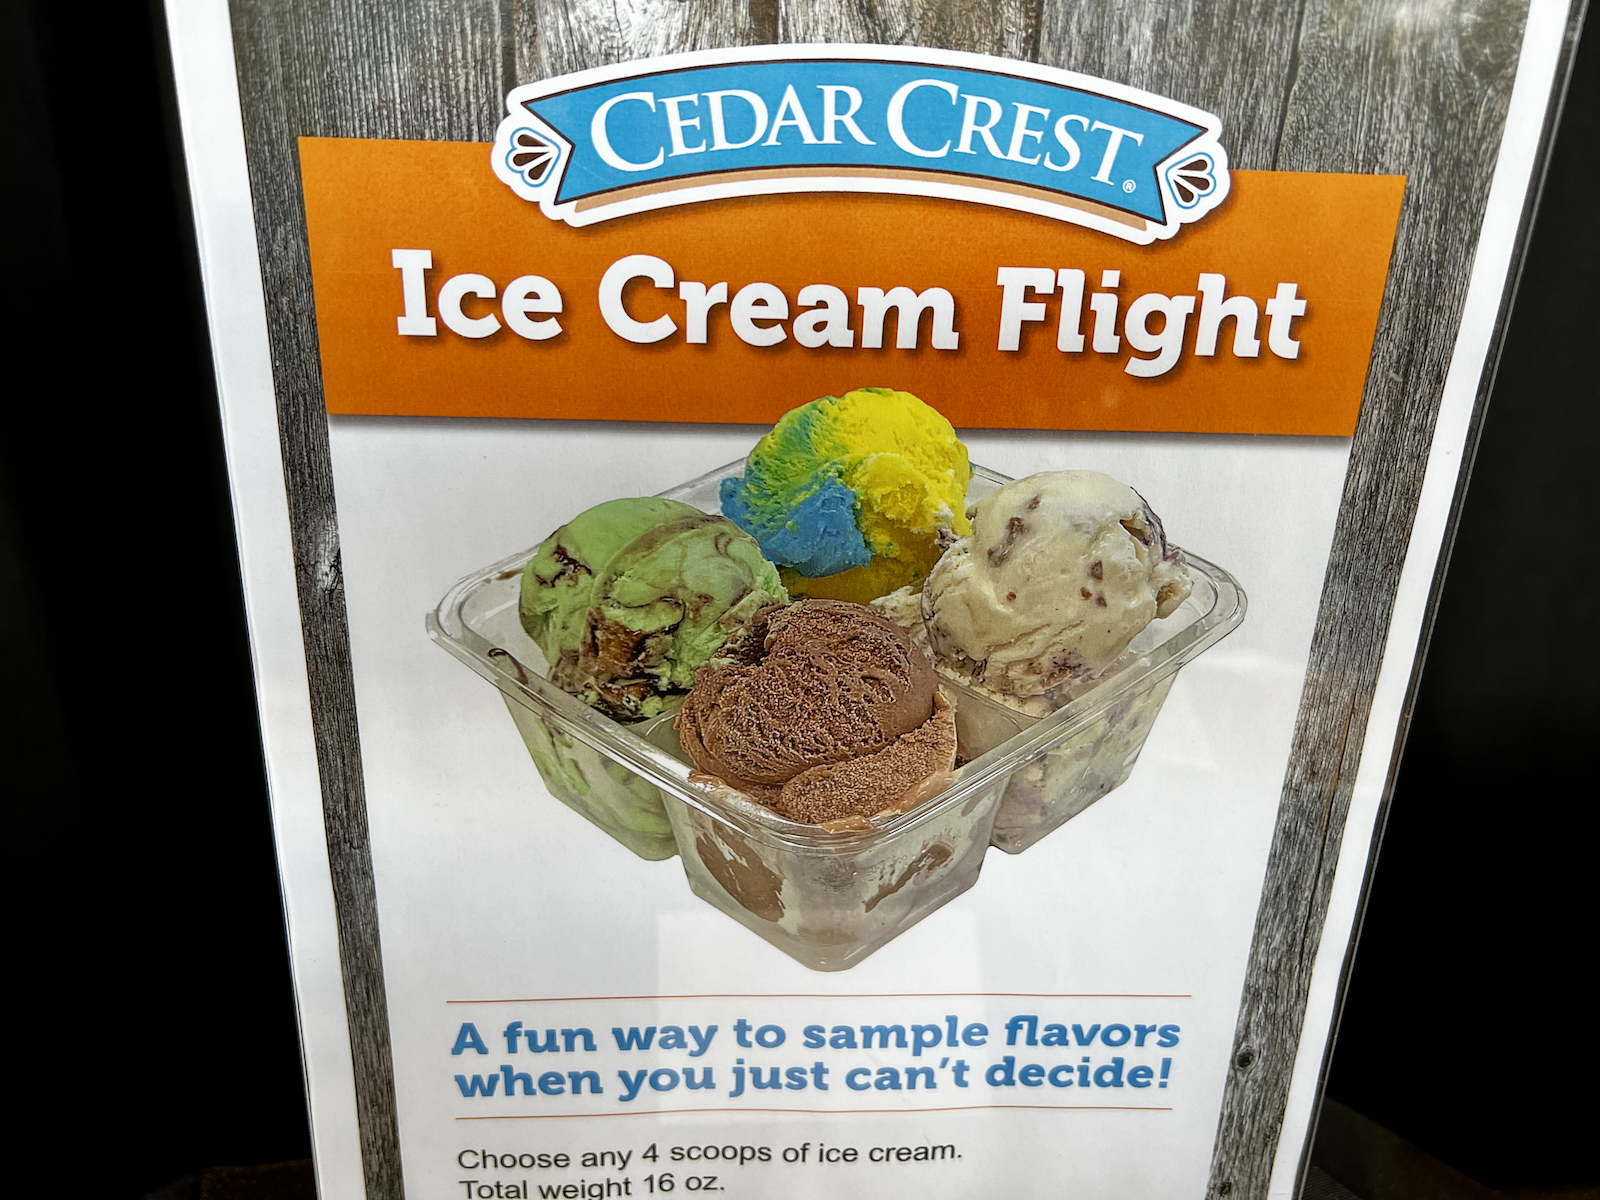 Cedar Crest ice cream flight sign